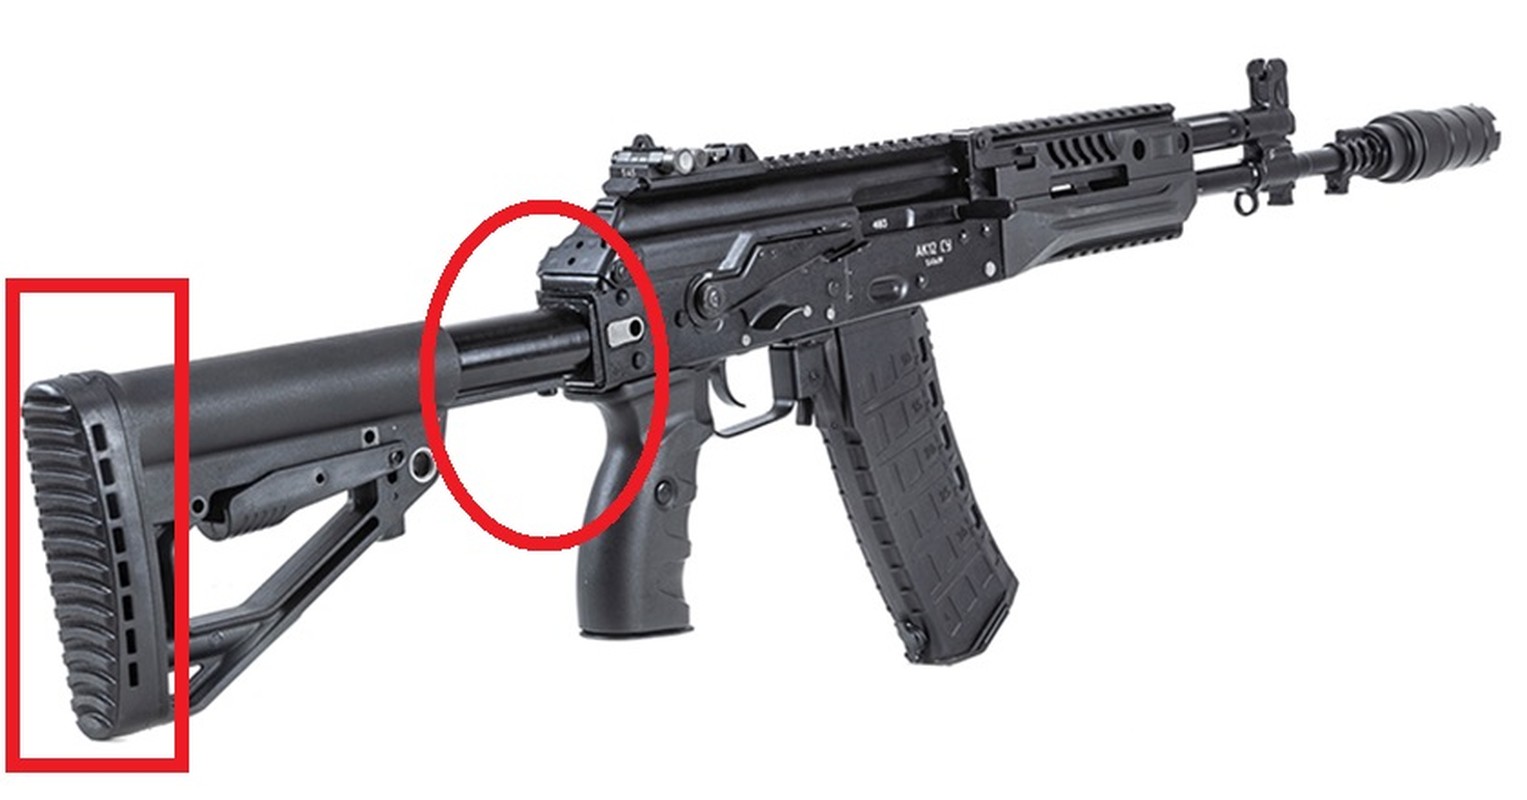 Sung truong tan cong AK-12: Cau tra loi danh thep cho khau M4-Hinh-11